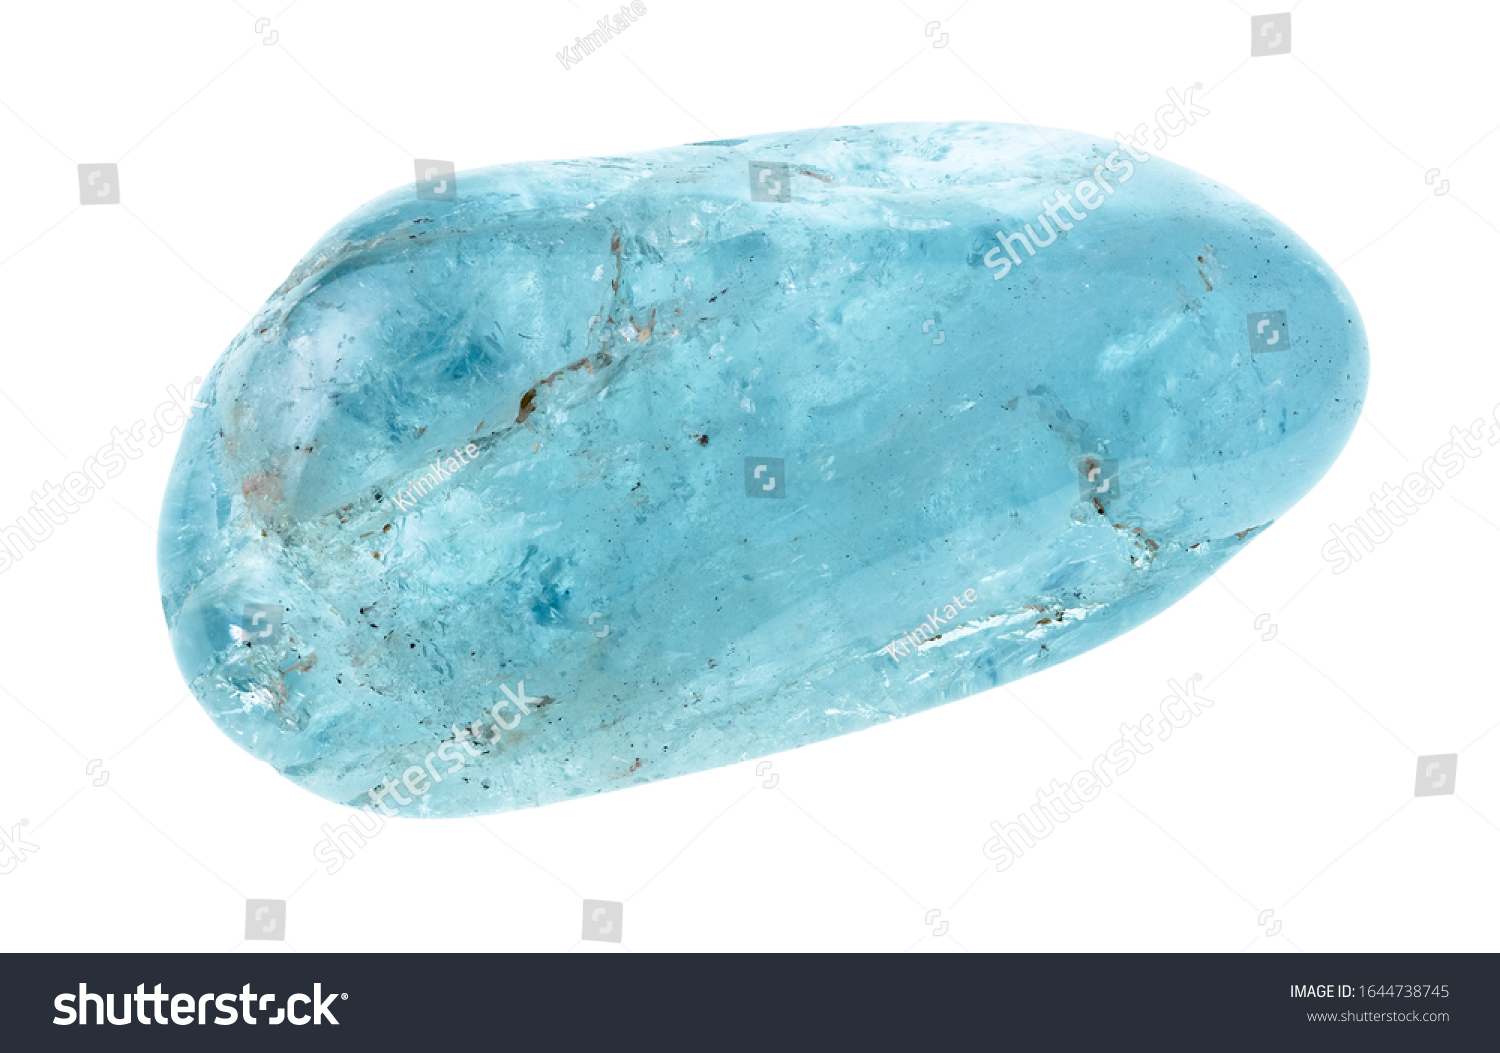 tumbled aquamarine (blue beryl) gemstone cutout on white background #1644738745